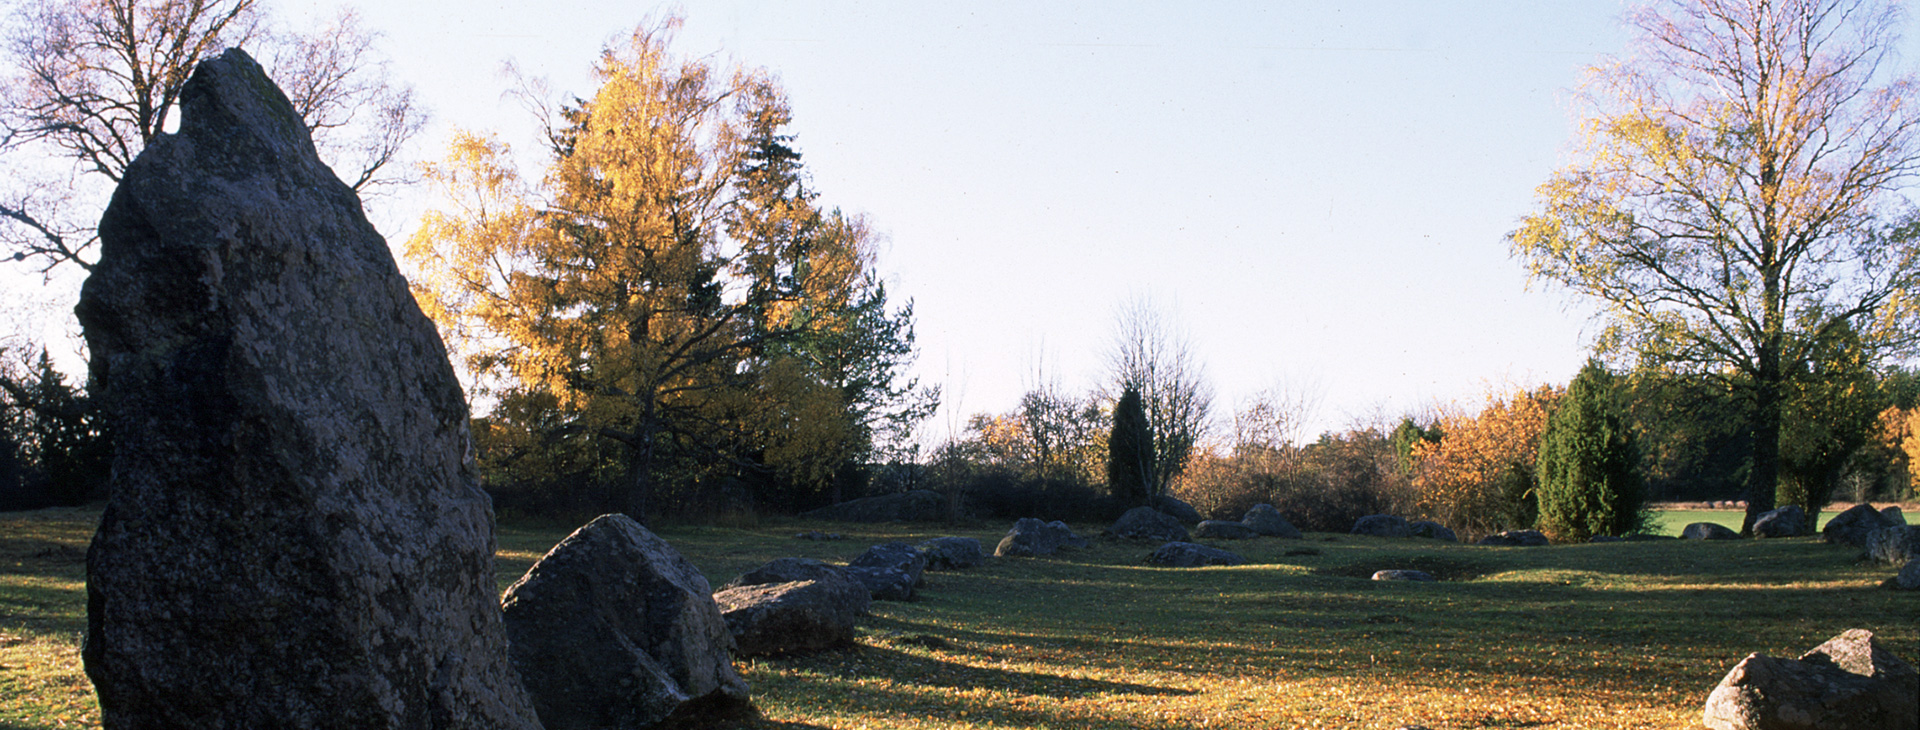 Stenar ligger i en rak formation på gräset.